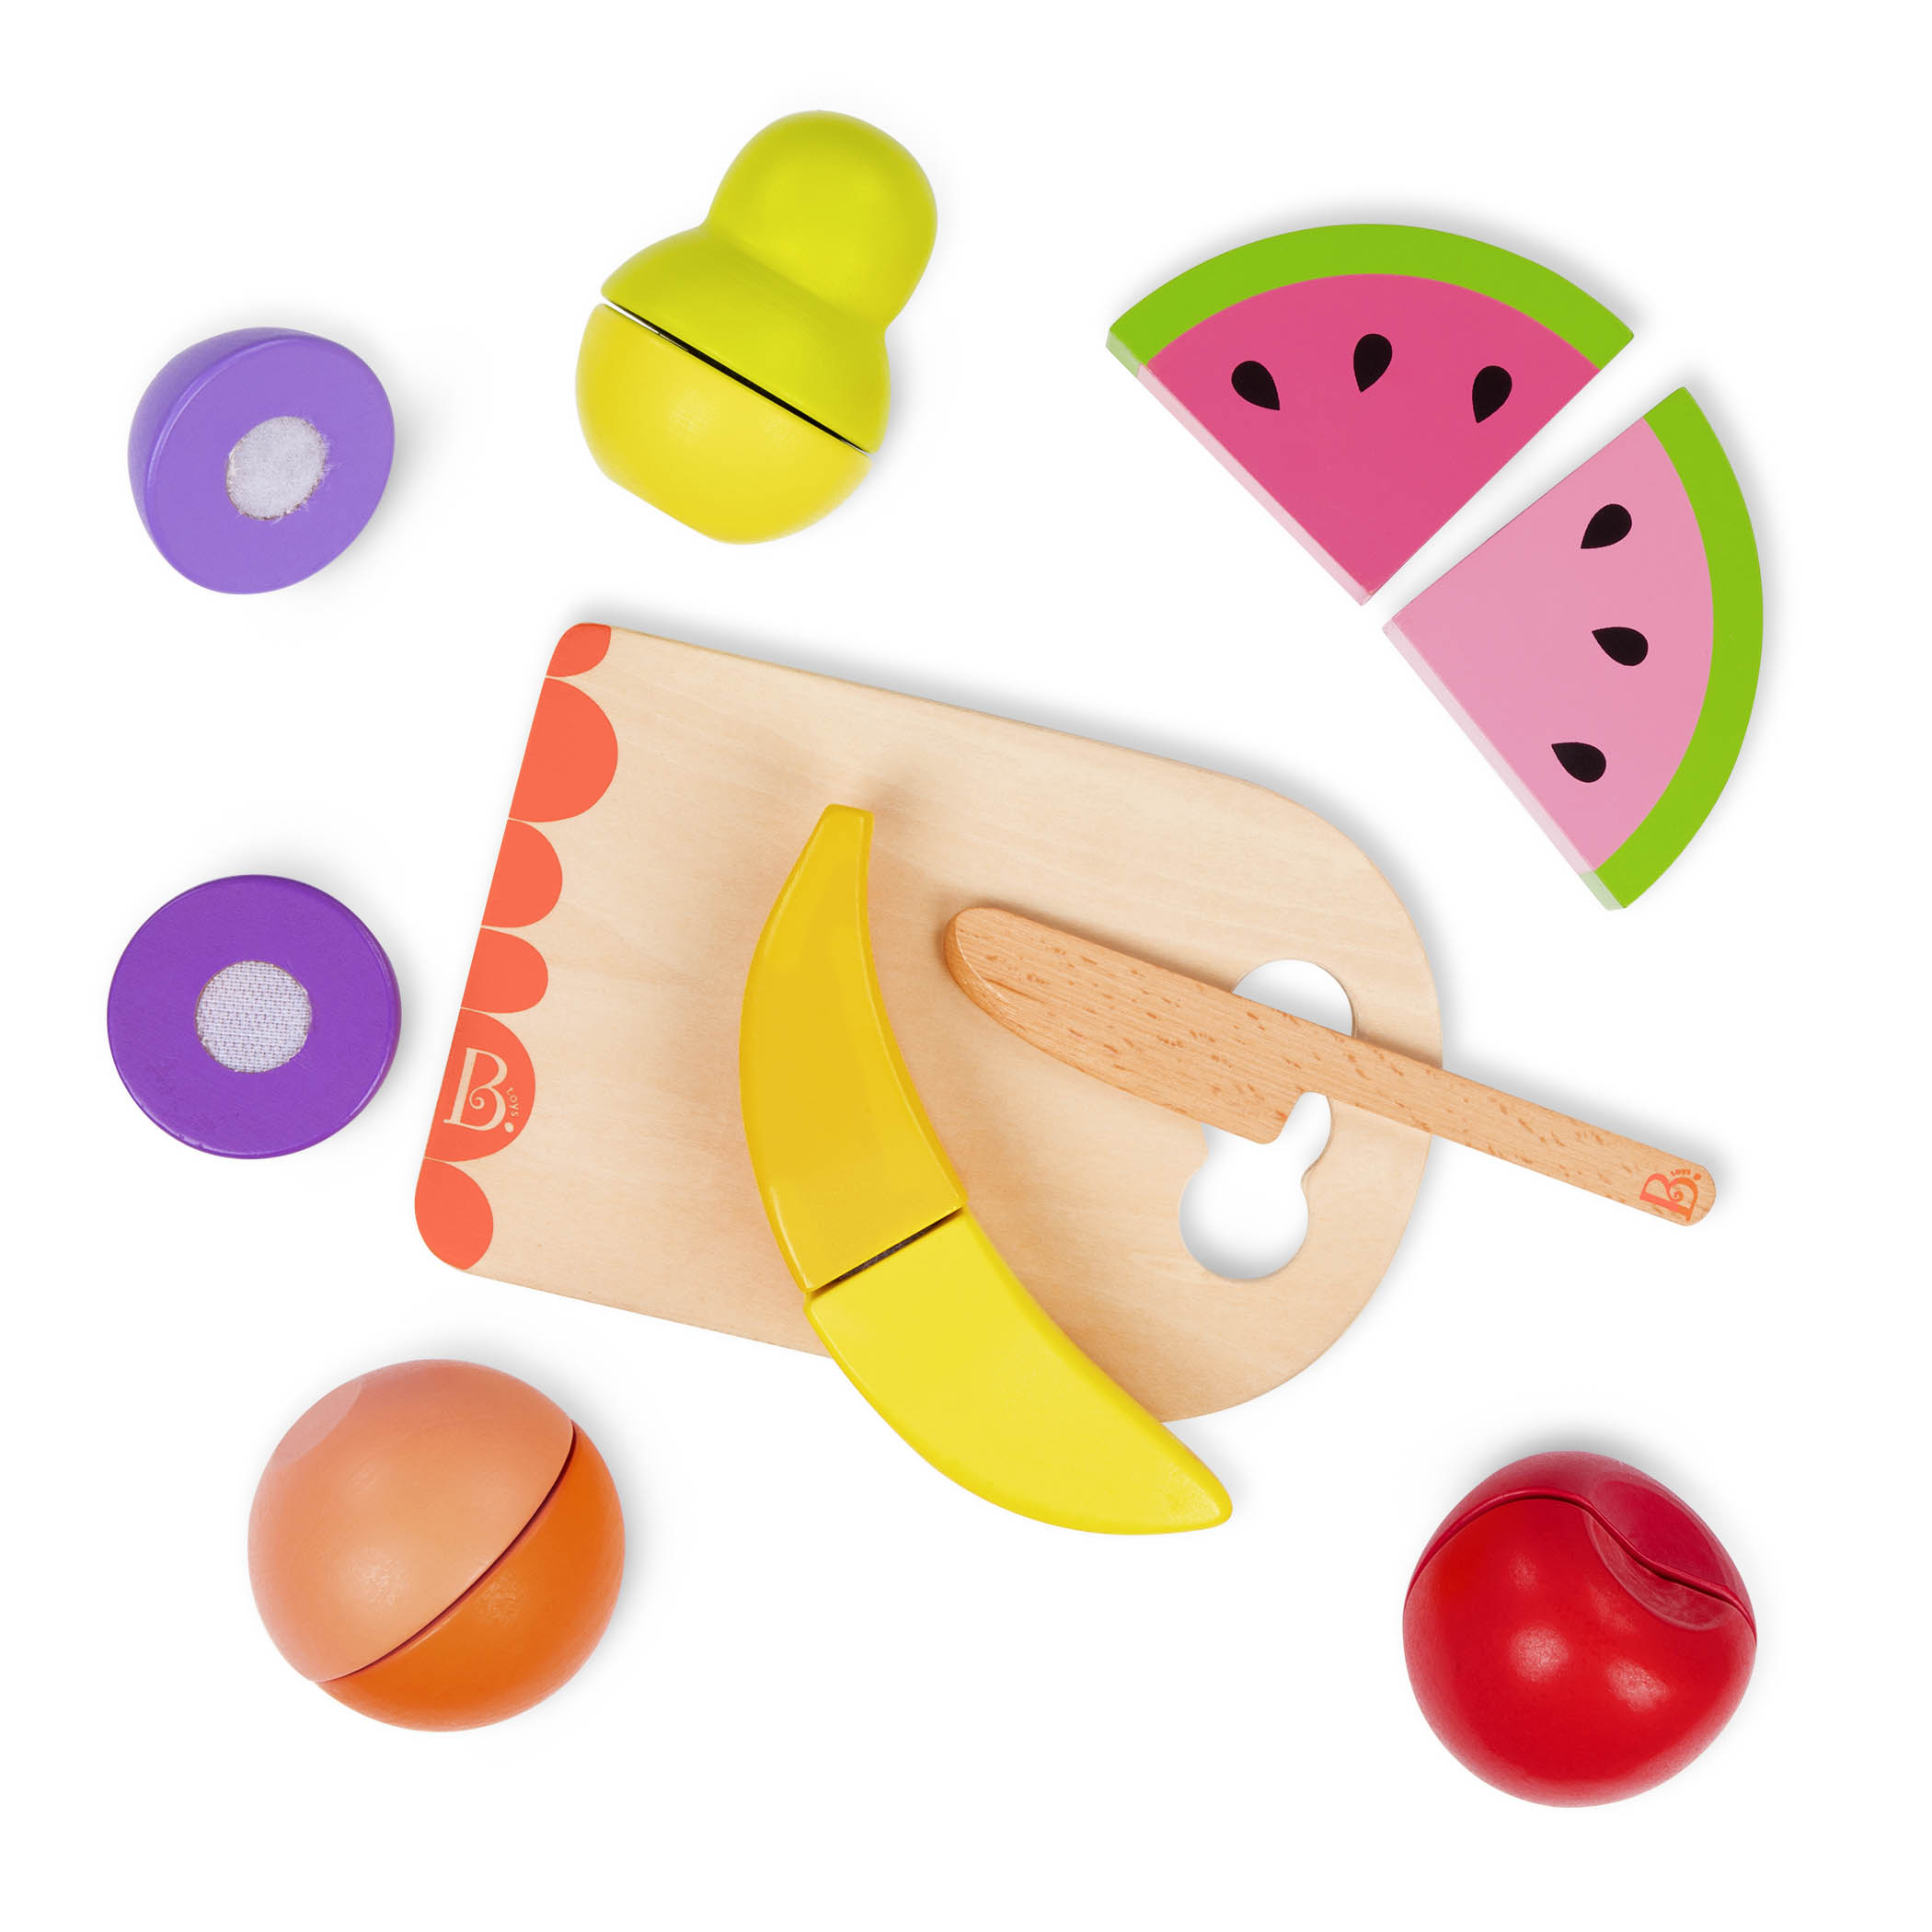 Btoys, Chop ‘n’ Play – Wooden Toy Fruits – zestaw drewnianych OWOCÓW do krojenia